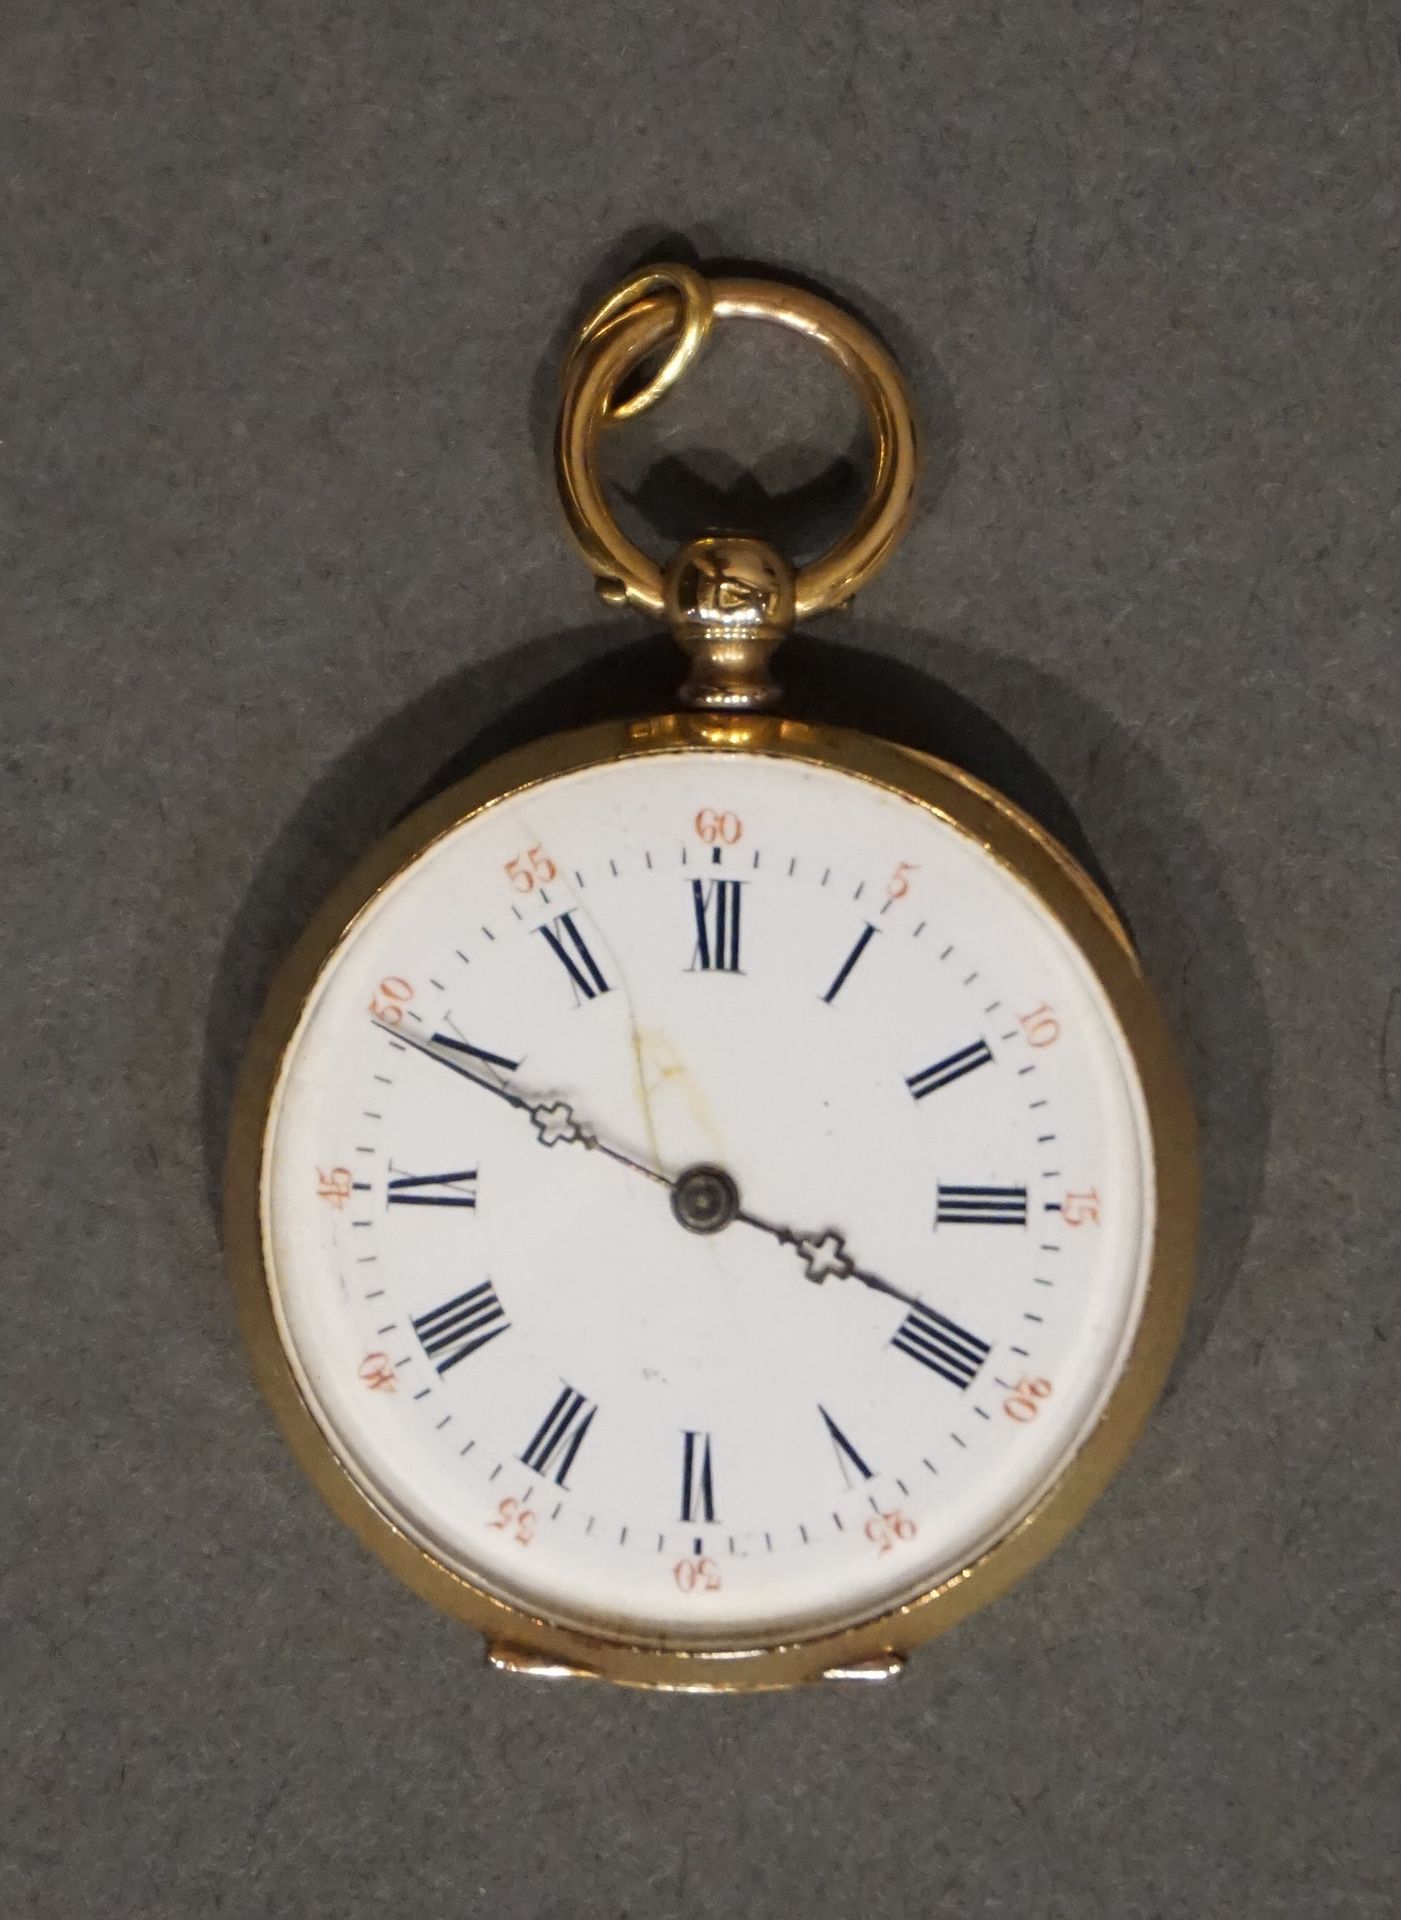 MONTRE DE COL Guilloche gold collar watch (Gross weight: 25g)